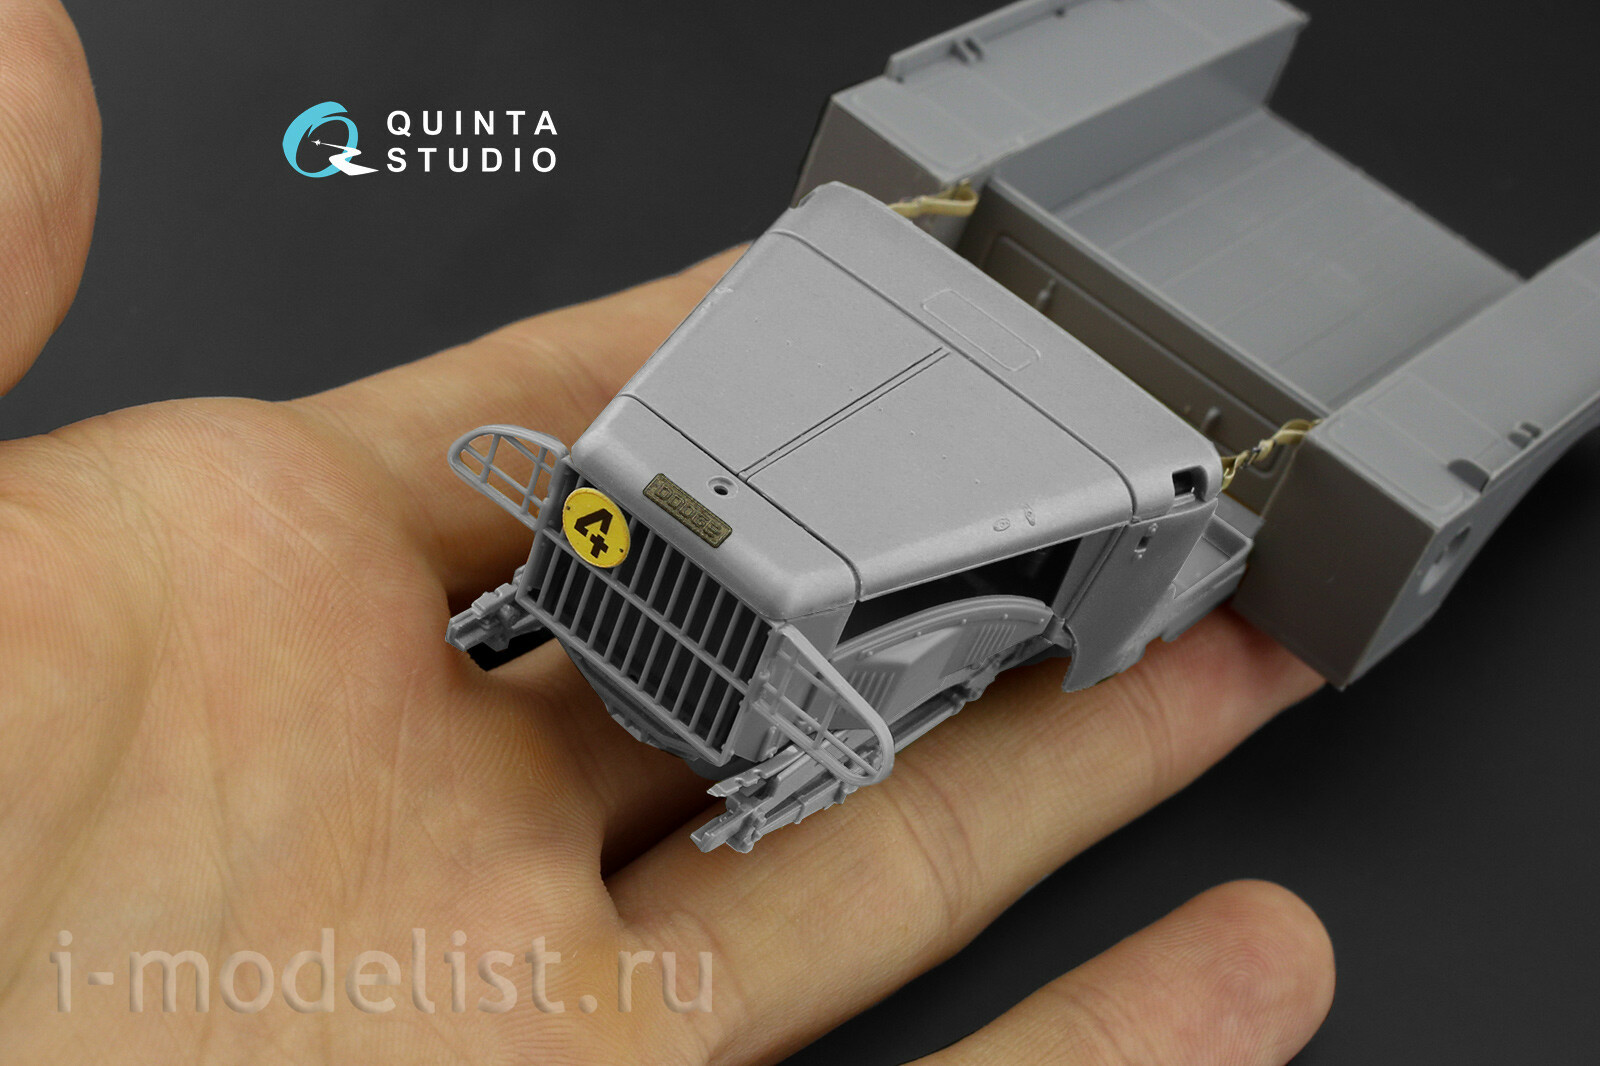 QD35062 Quinta Studio 1/35 3D Декаль интерьера кабины для модели фирмы Звезда, 